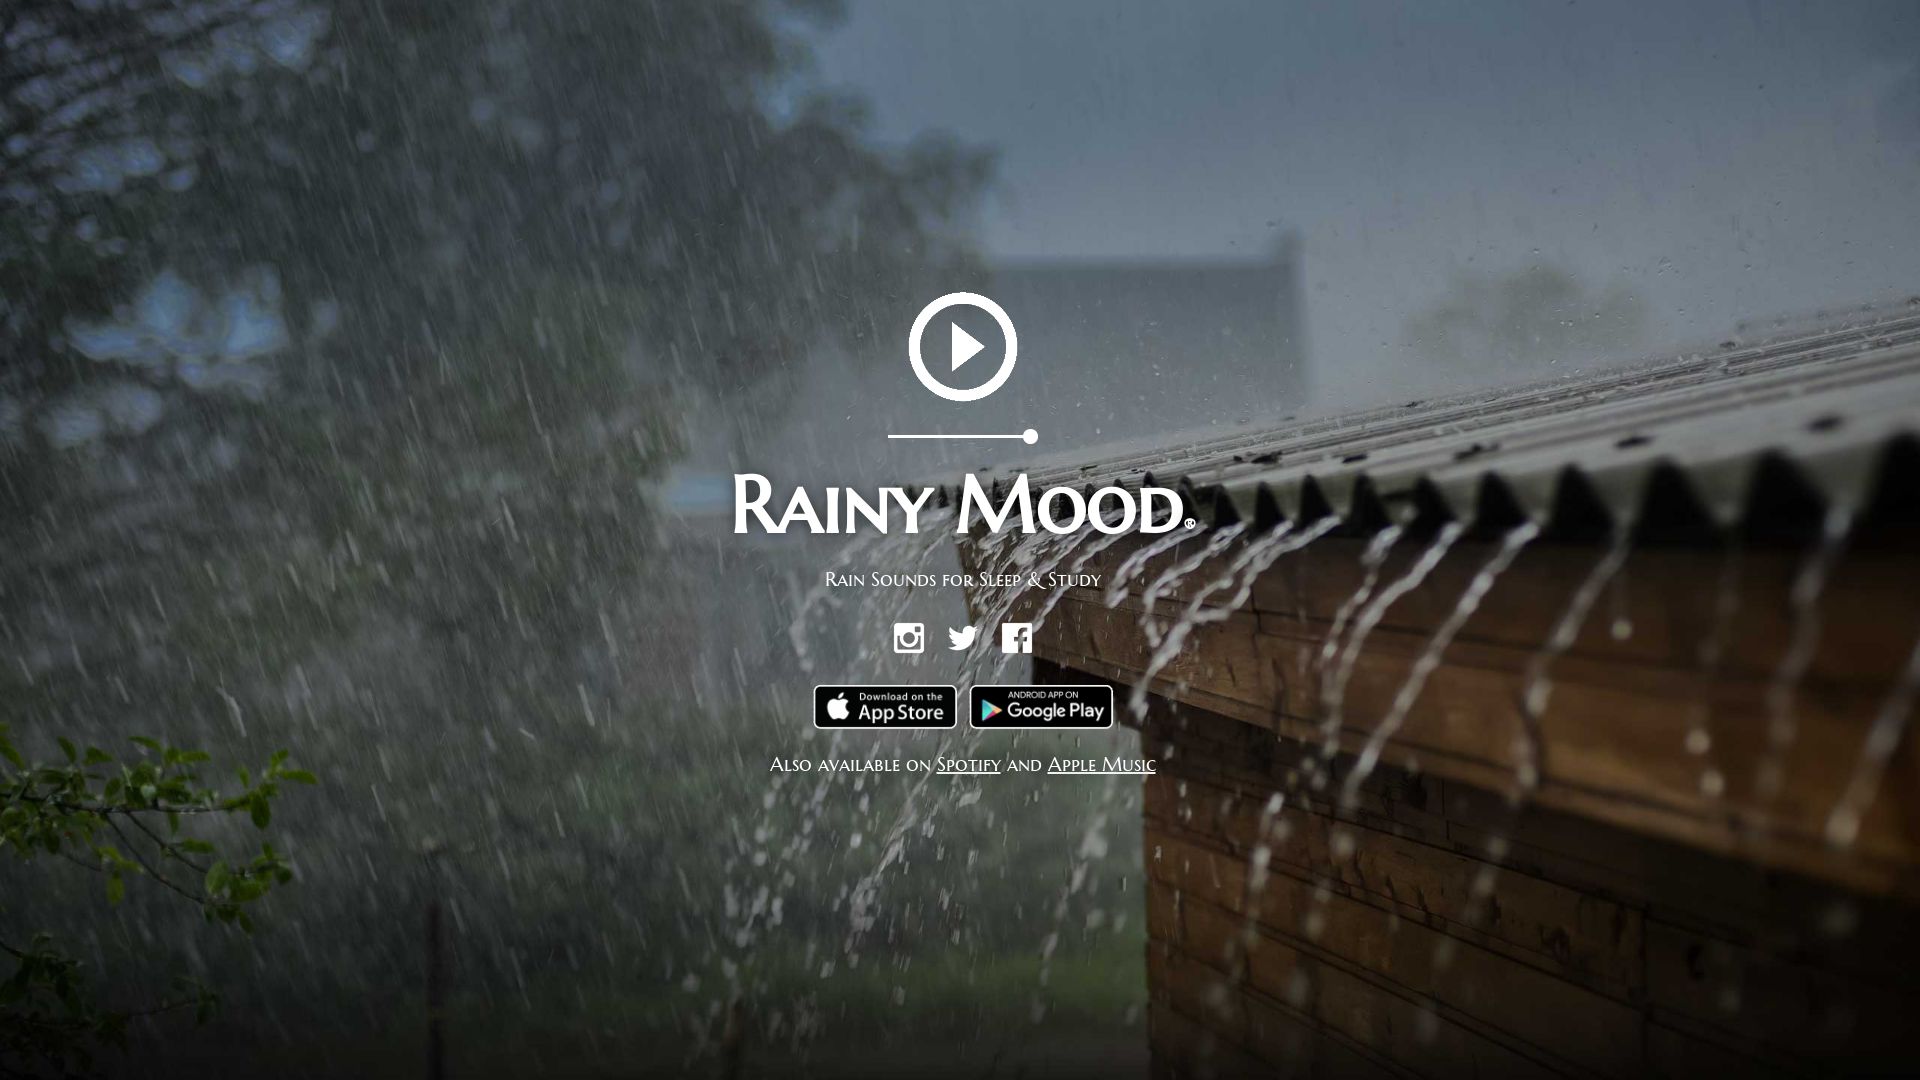 État du site web rainymood.com est   EN LIGNE